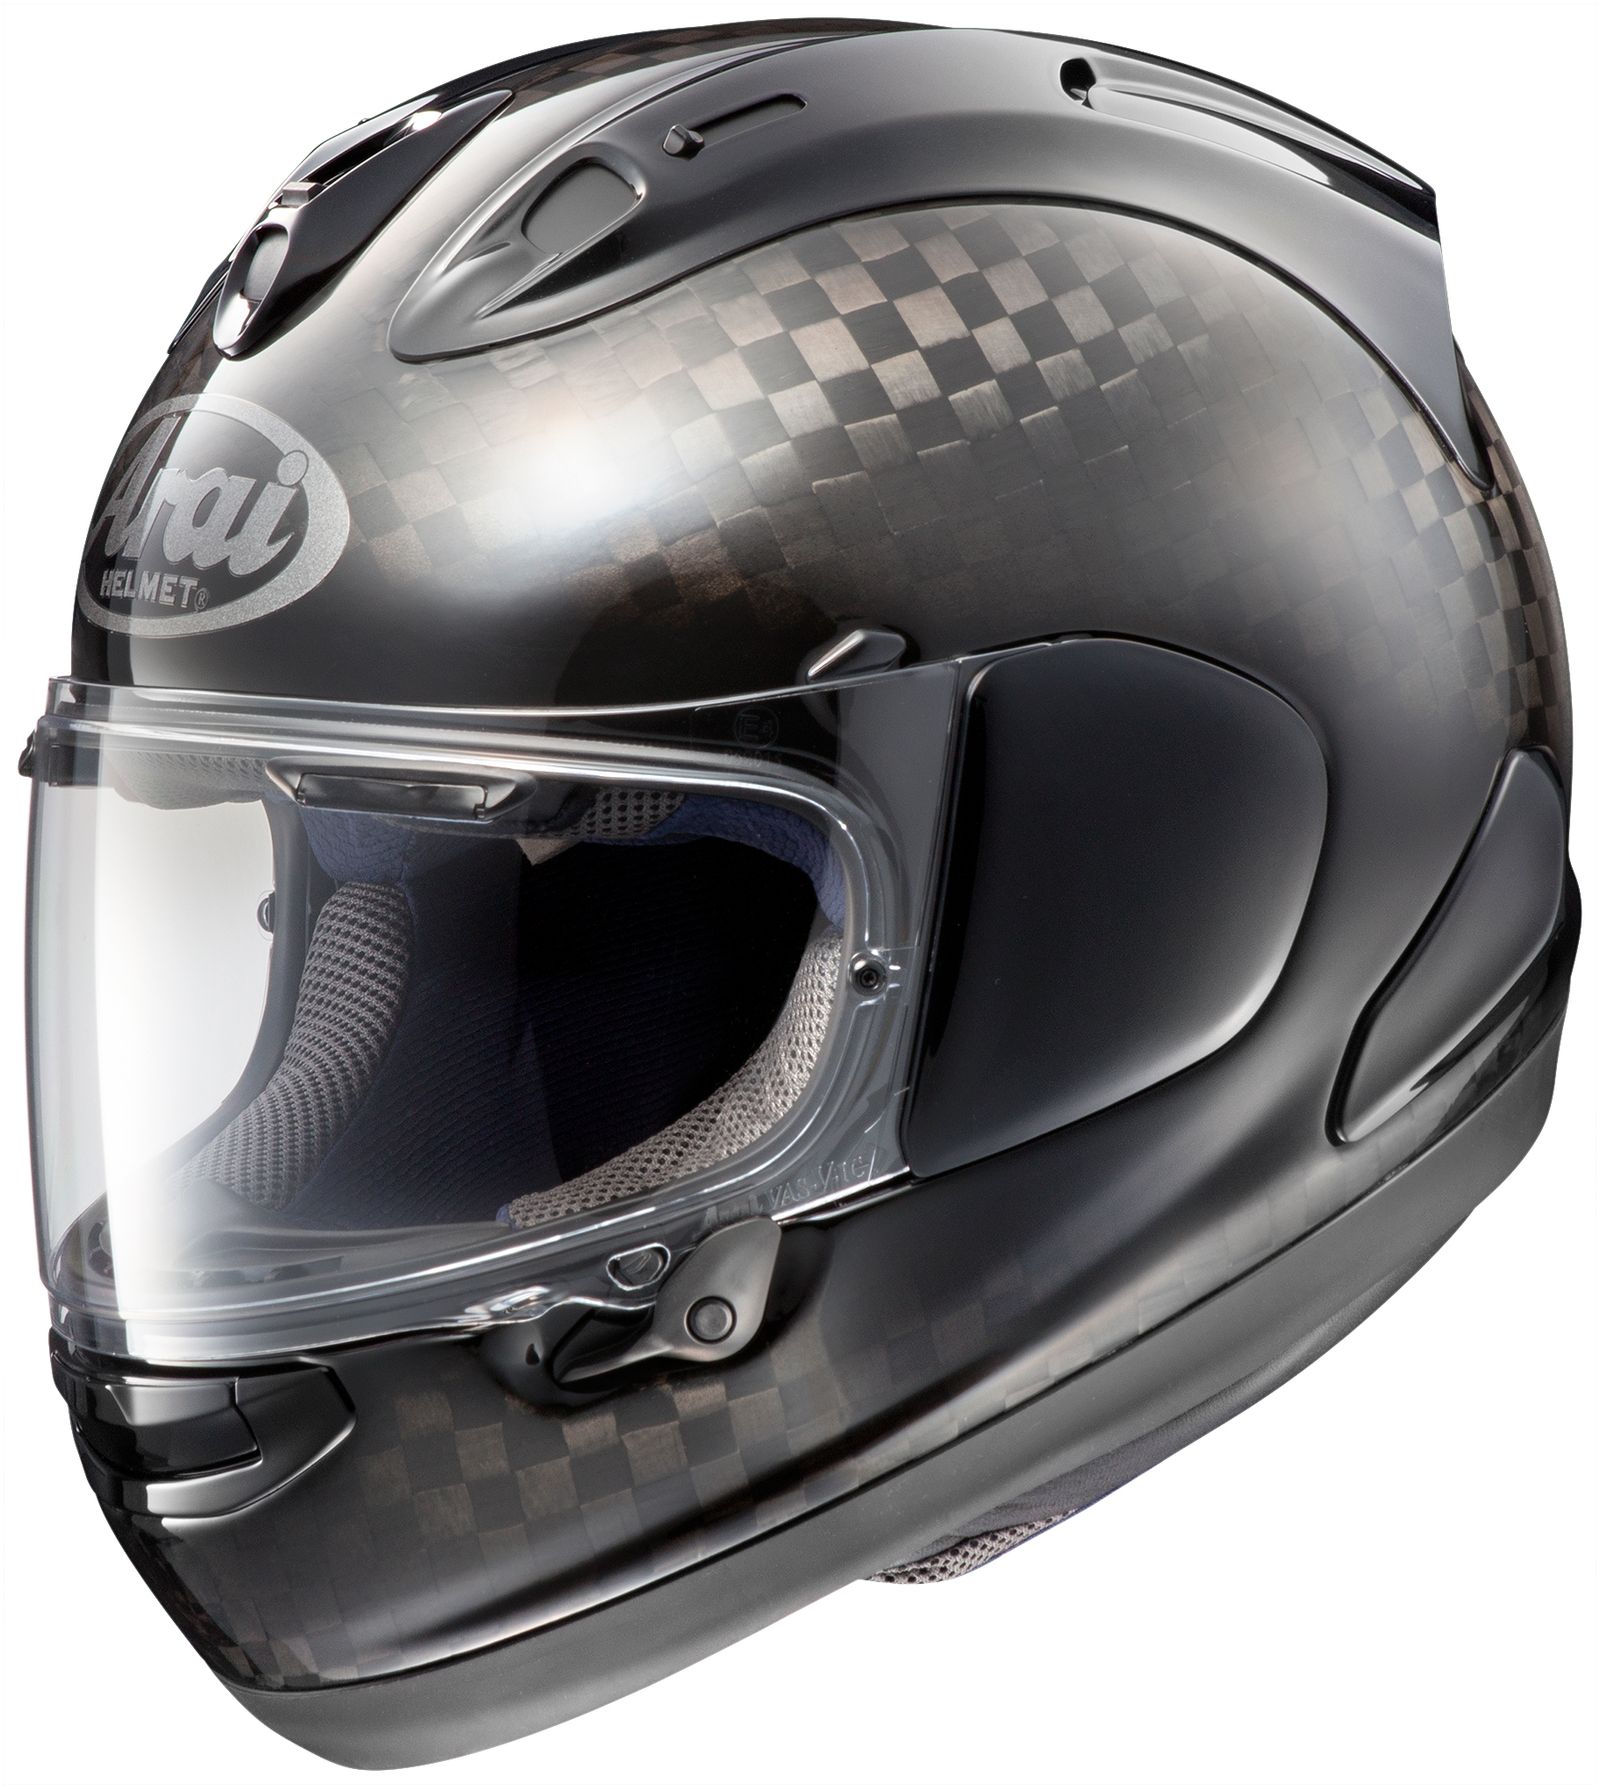 Arai Signet-X & Arai Quantum-X Helmet Review at RevZilla.com 